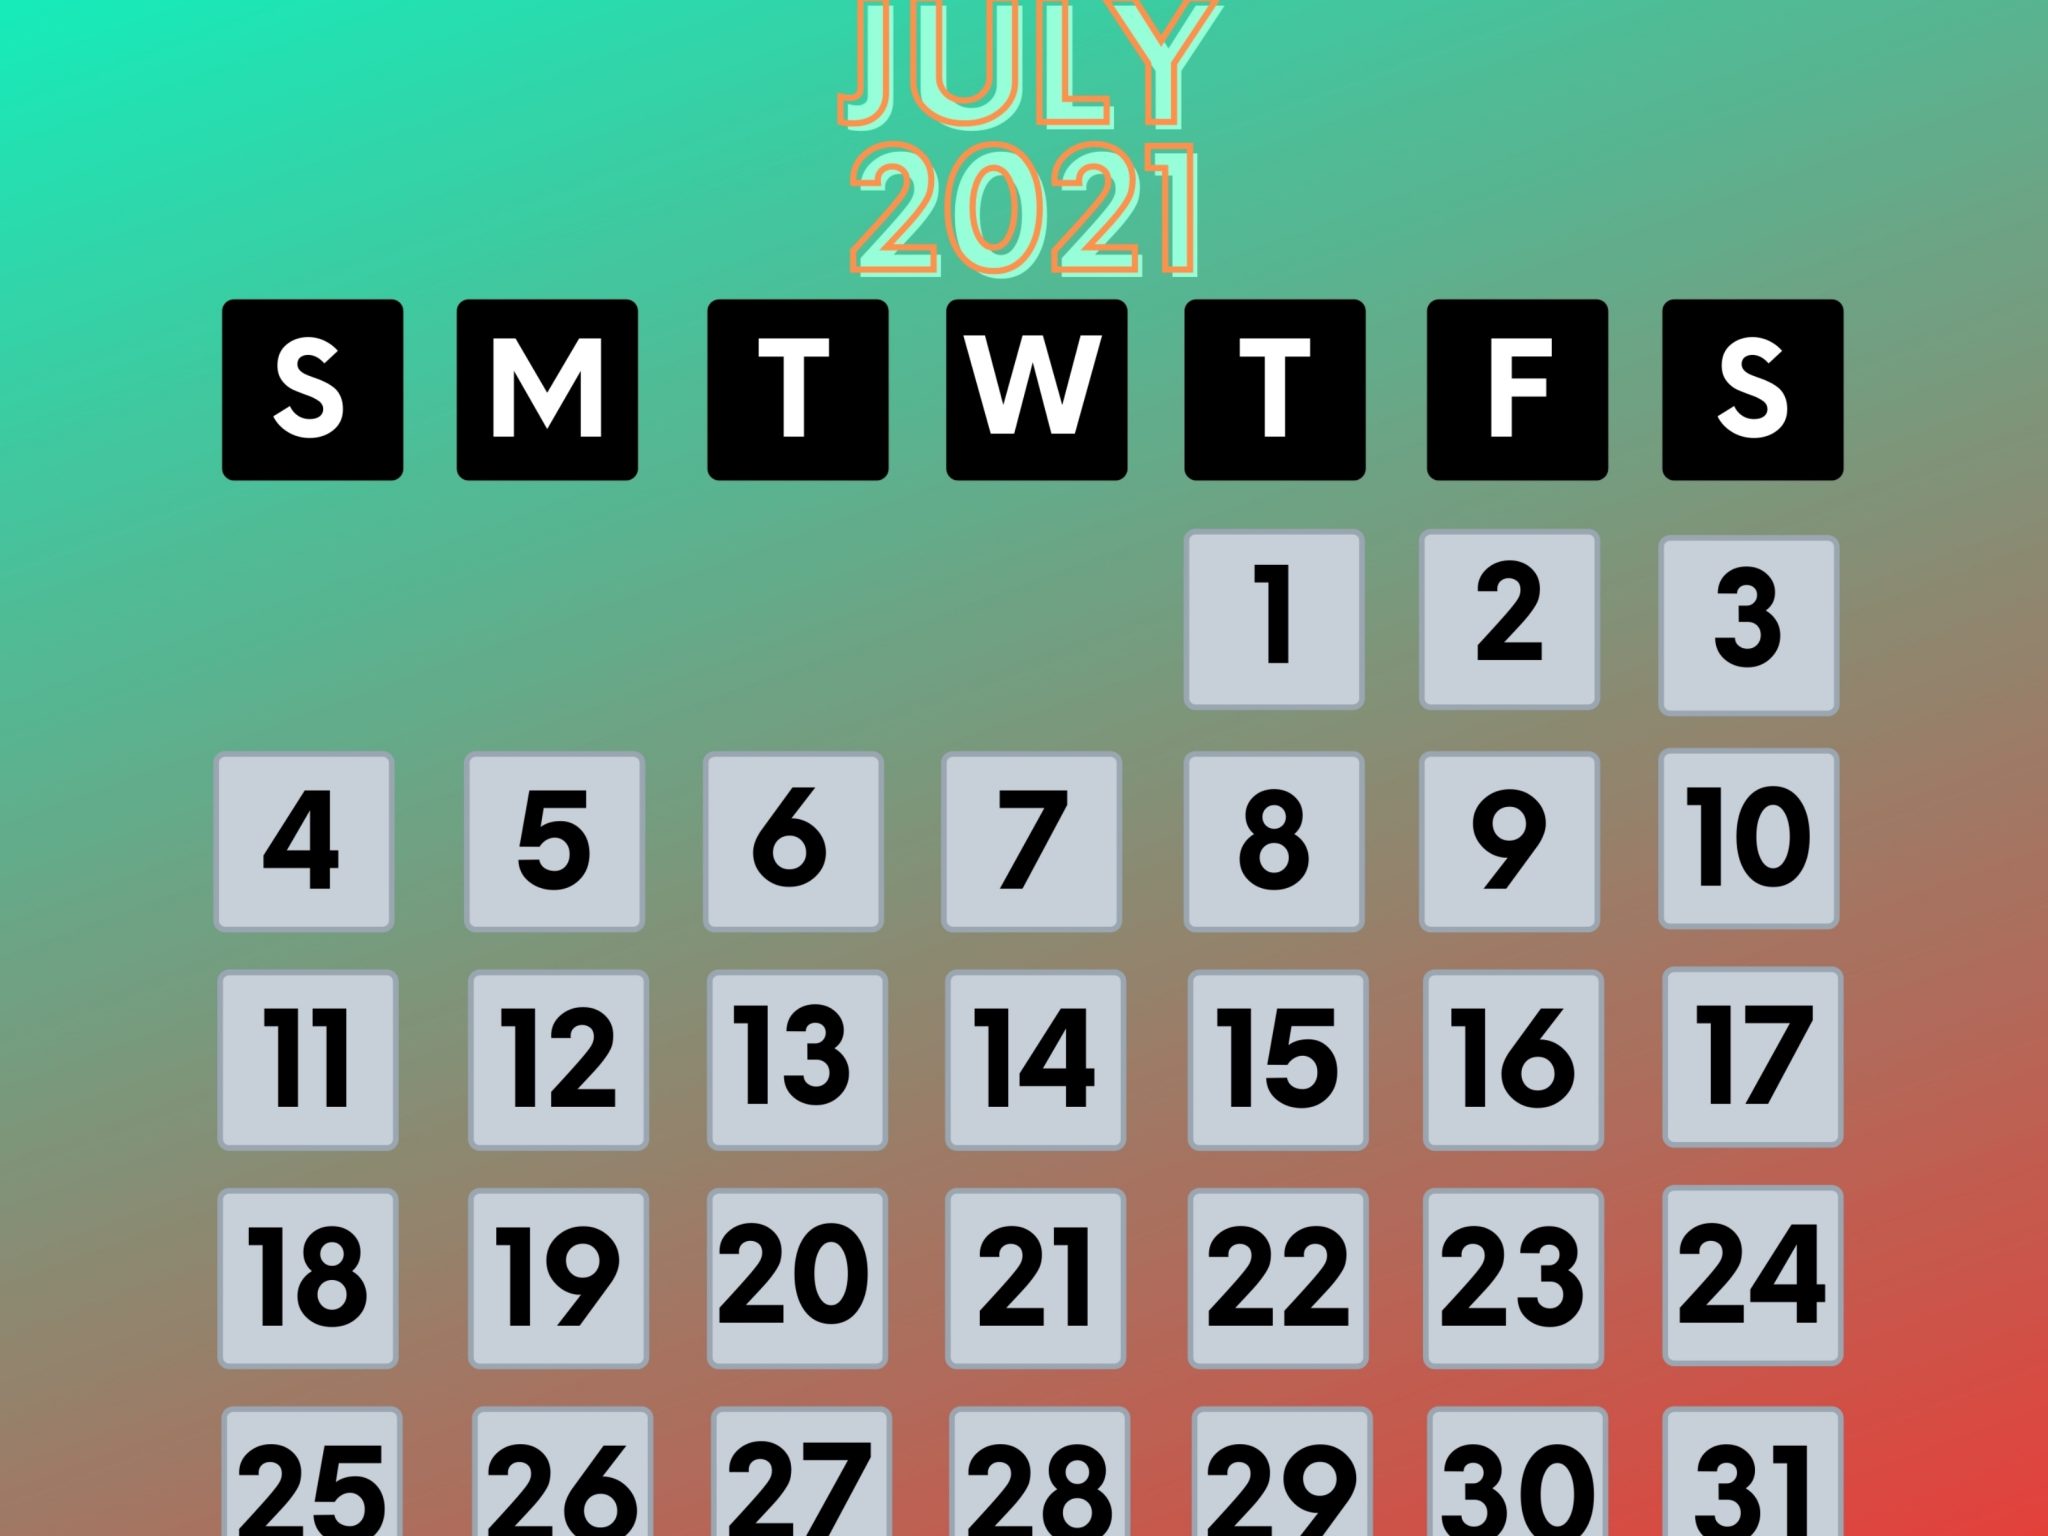 2048x1536 wallpaper July 2021 Calendar iPad Wallpaper 2048x1536 pixels resolution